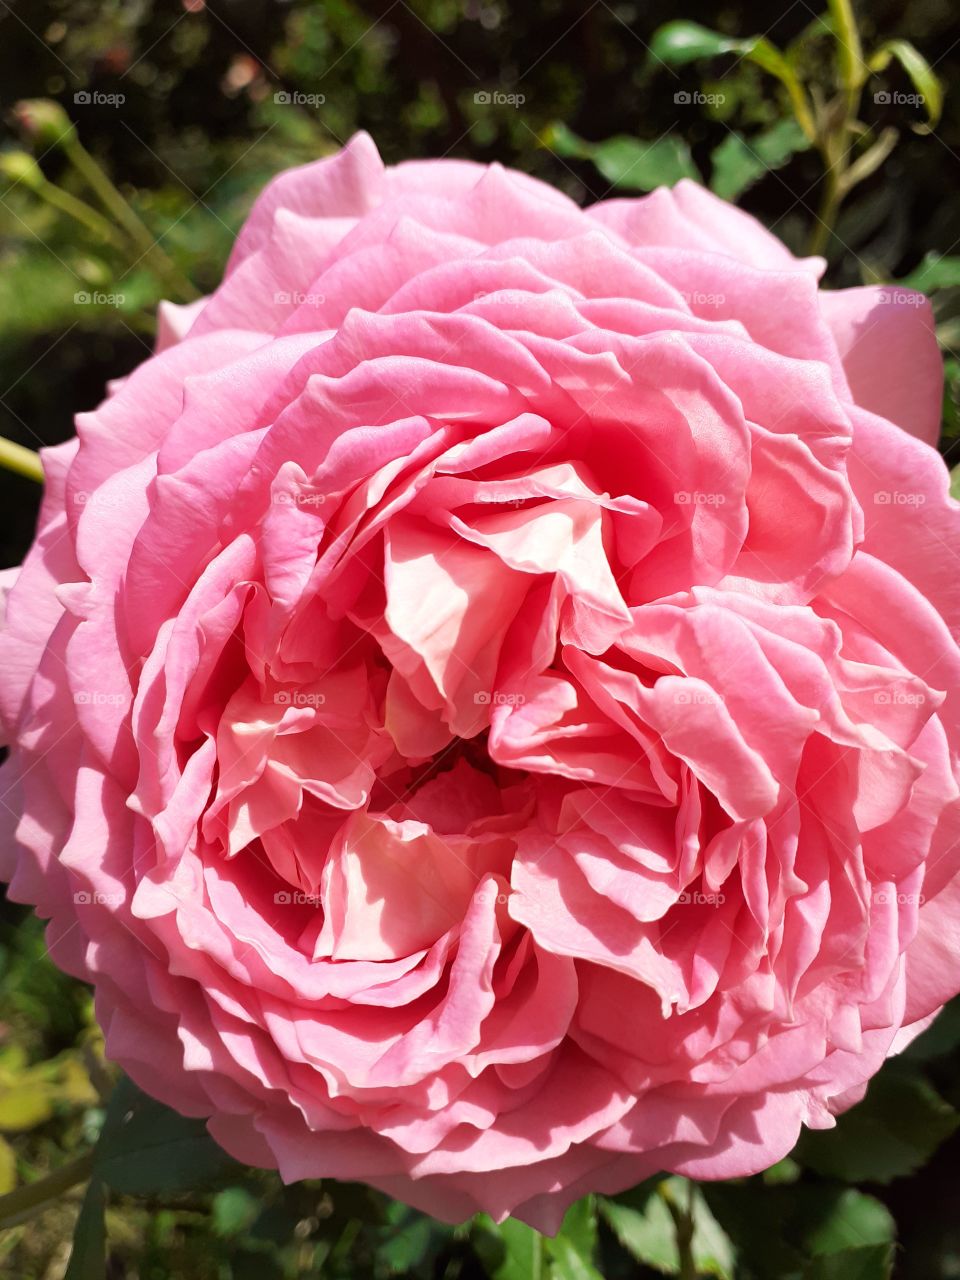 My pink rose.